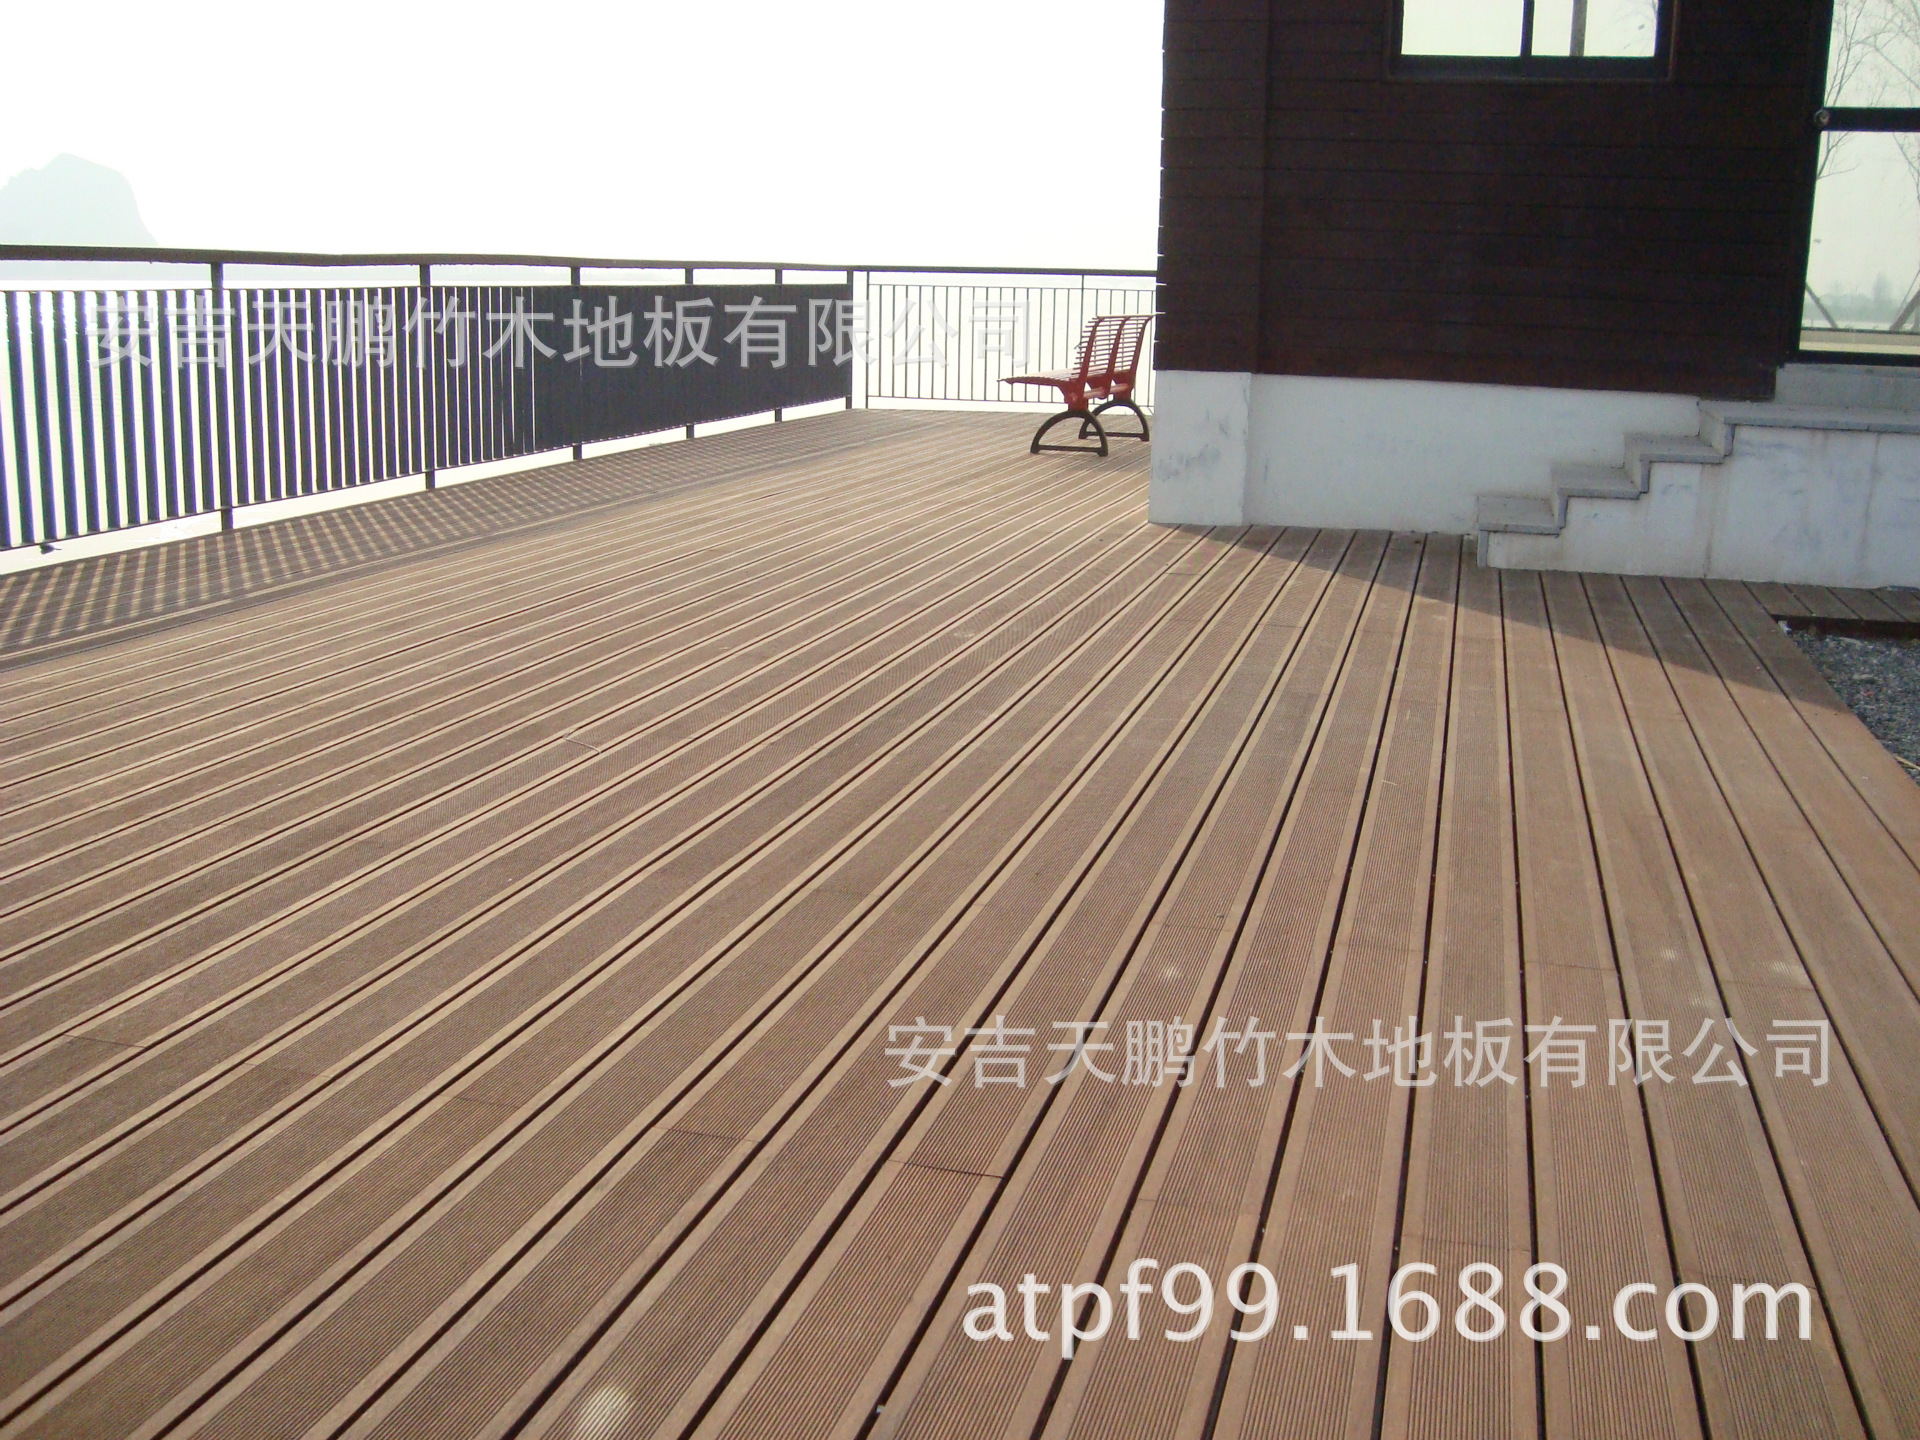 四川竹钢地板厂家高耐竹重竹木室外模压竹钢地板网纹印花竹钢地板-阿里巴巴